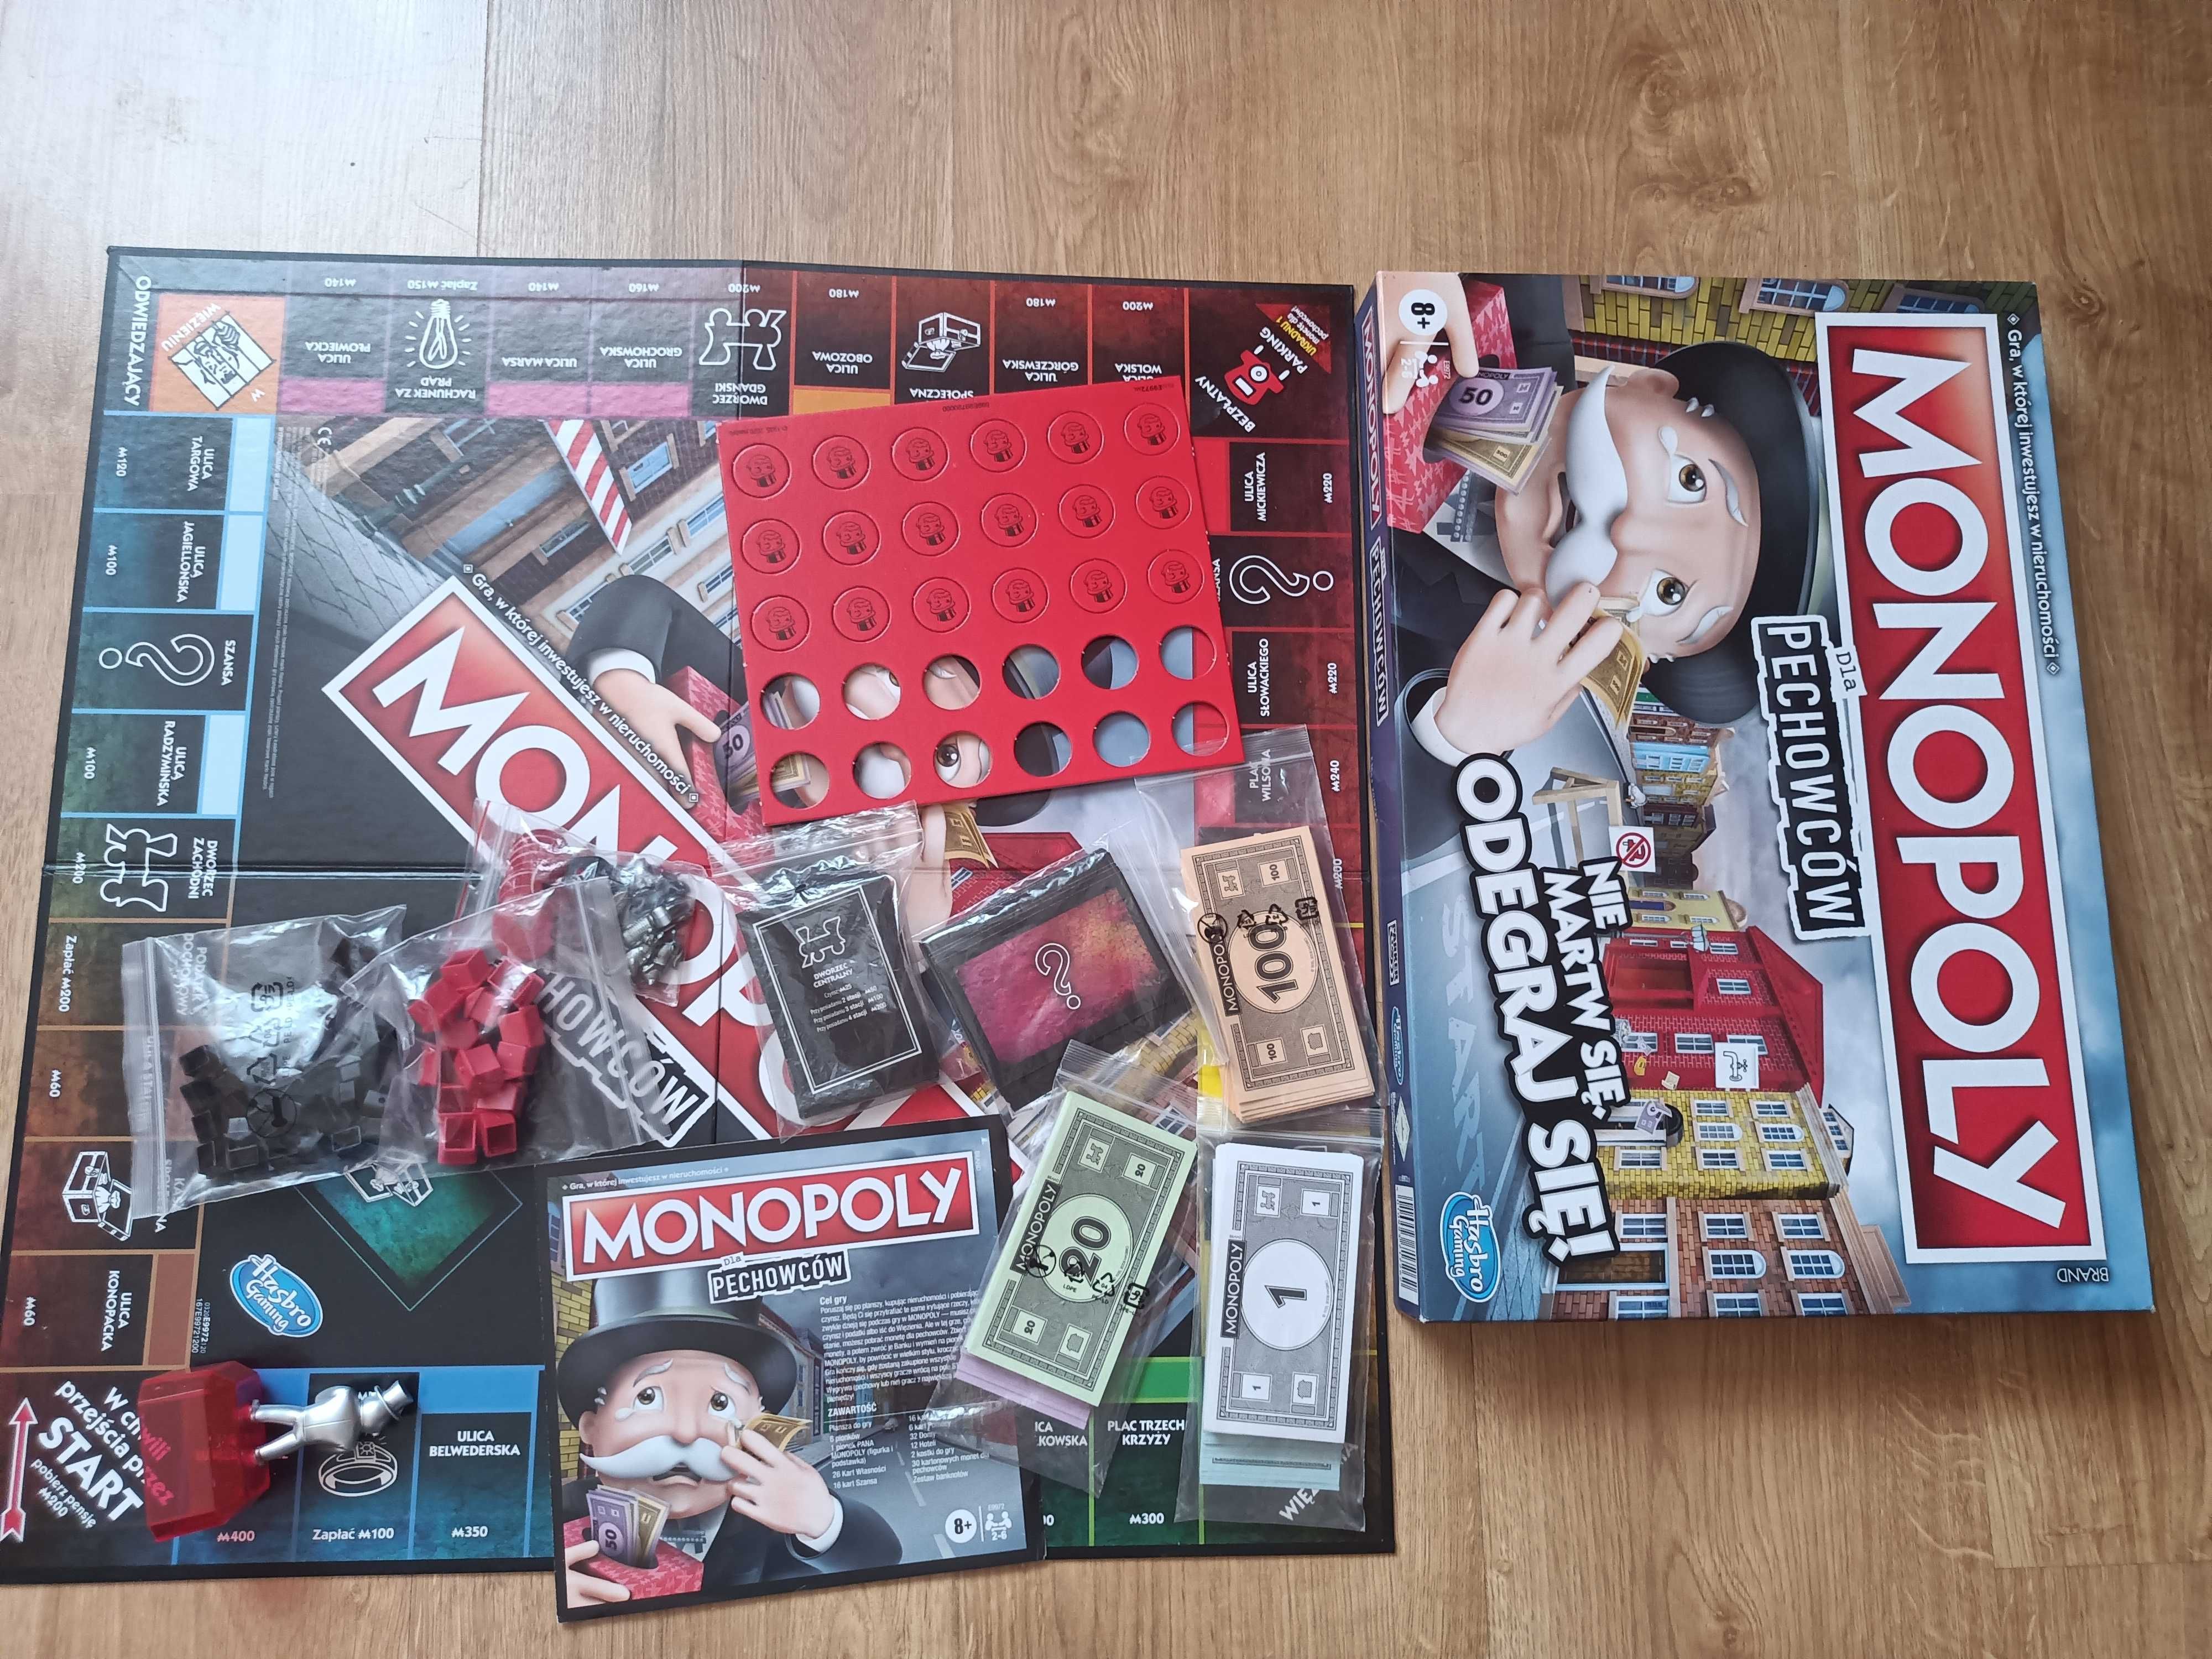 Monopoly dla pechowców Gra planszowa